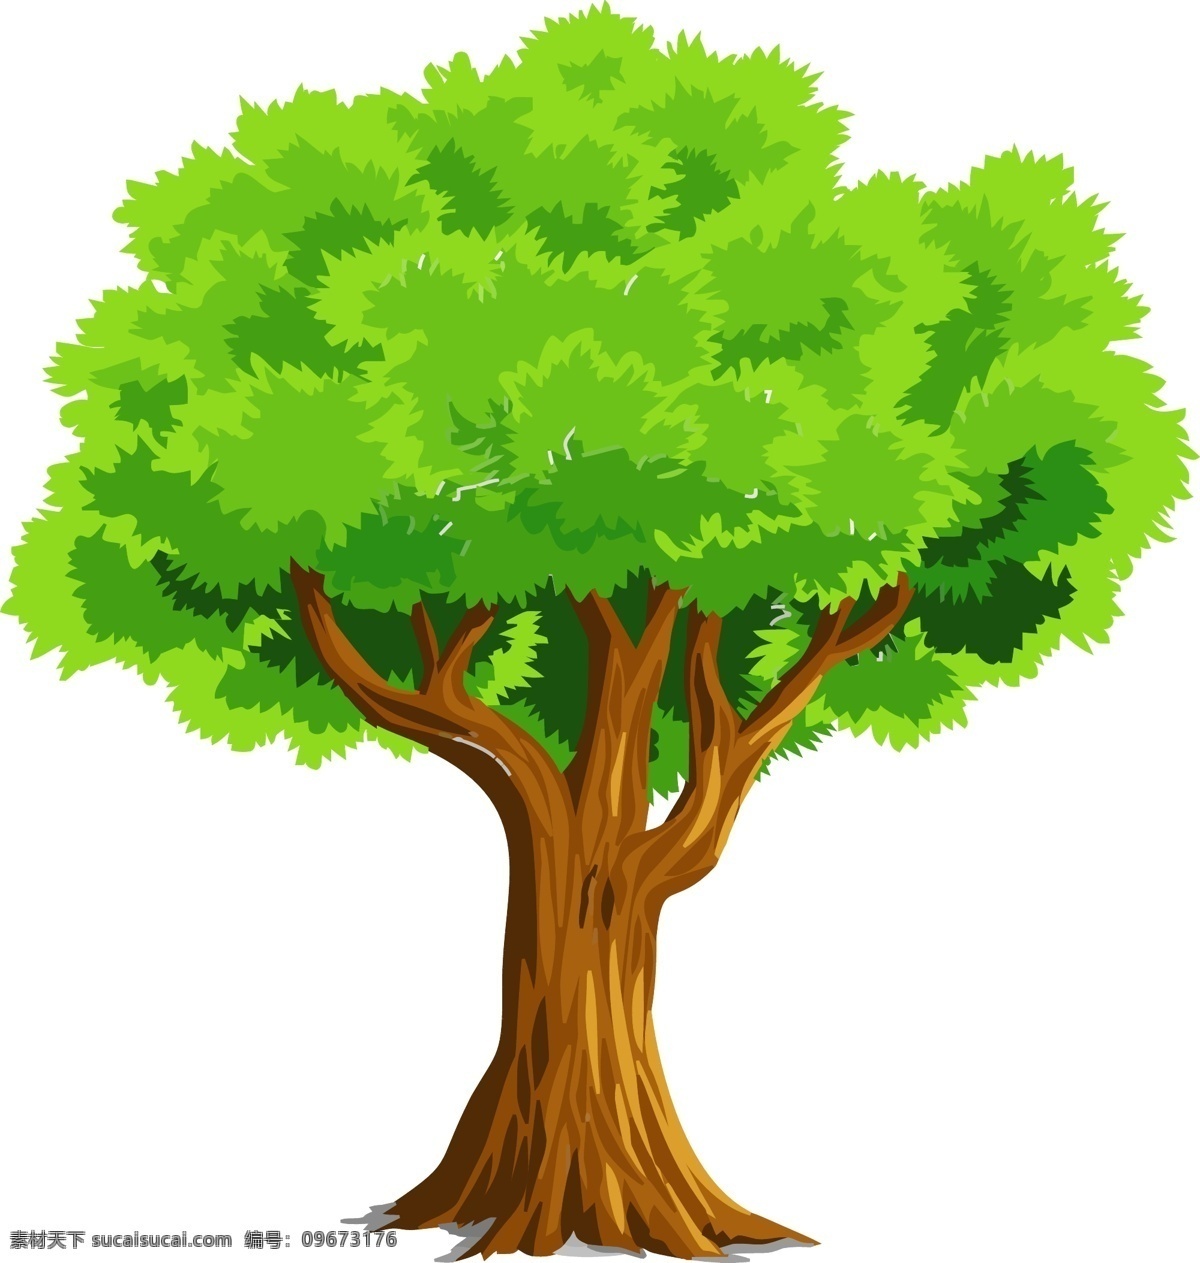 矢量绿色大树 矢量 绿色 大树 绘画 插图 标志图标 其他图标